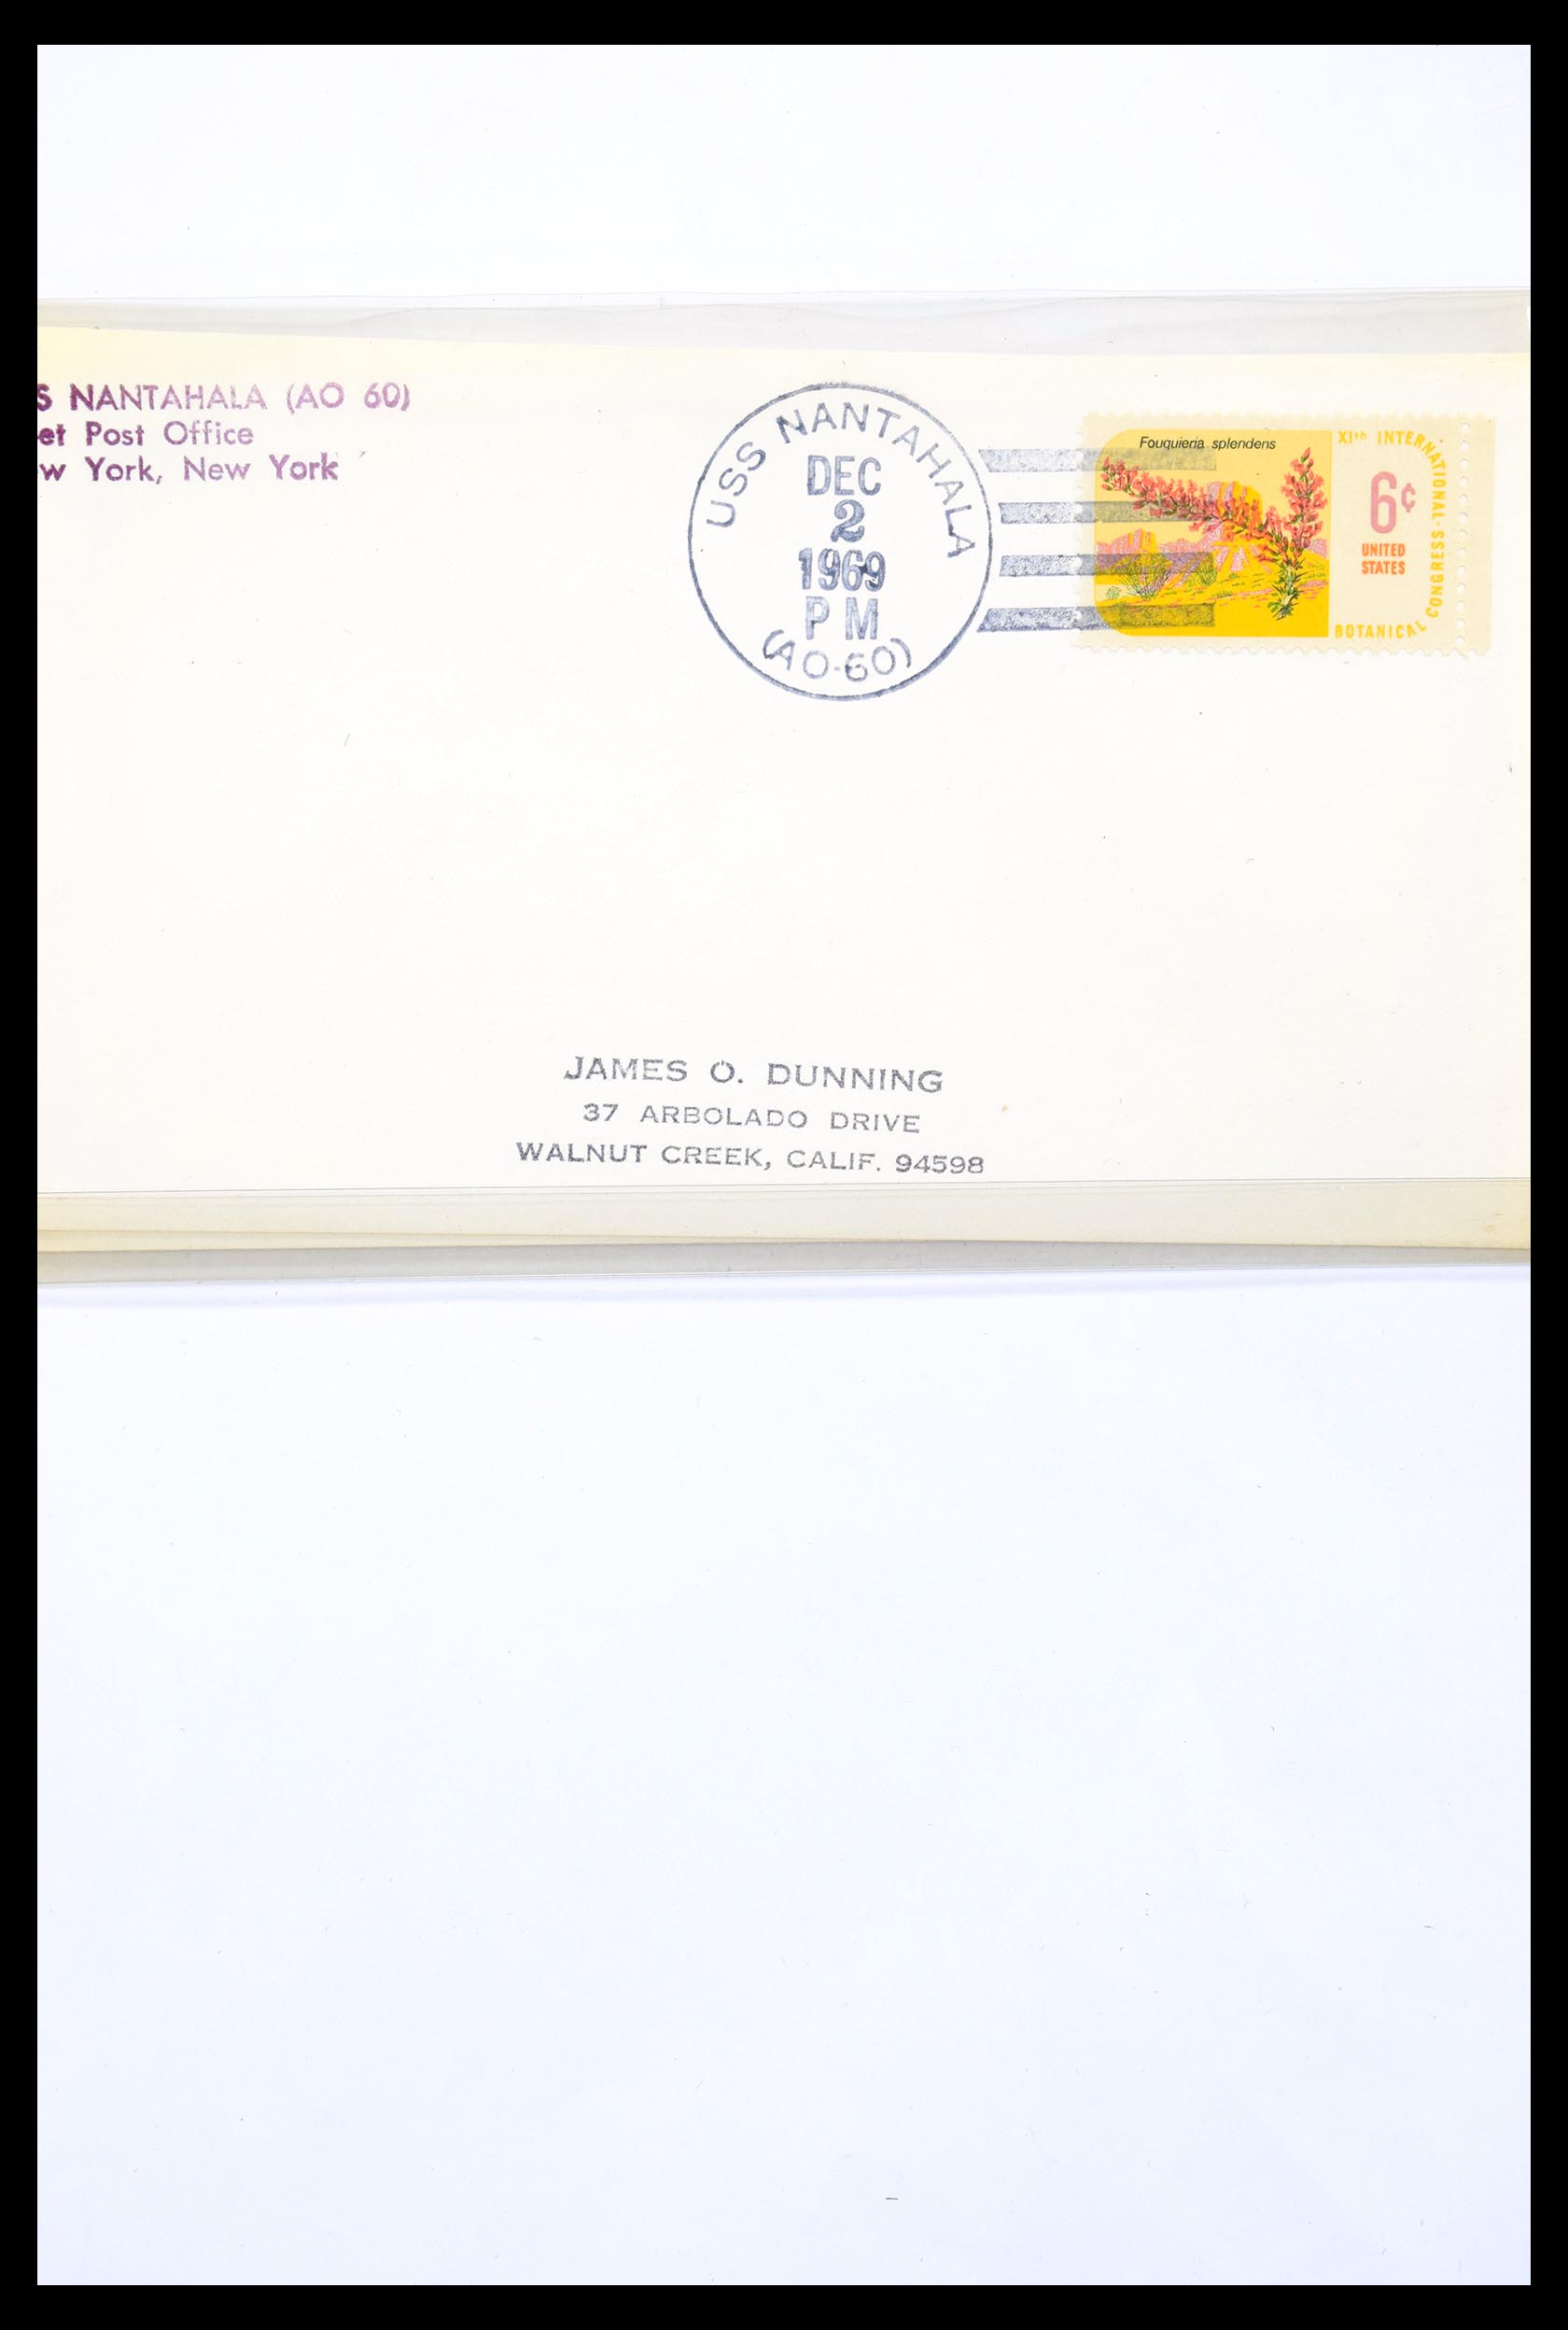 30341 295 - 30341 USA scheepspost brieven 1930-1970.